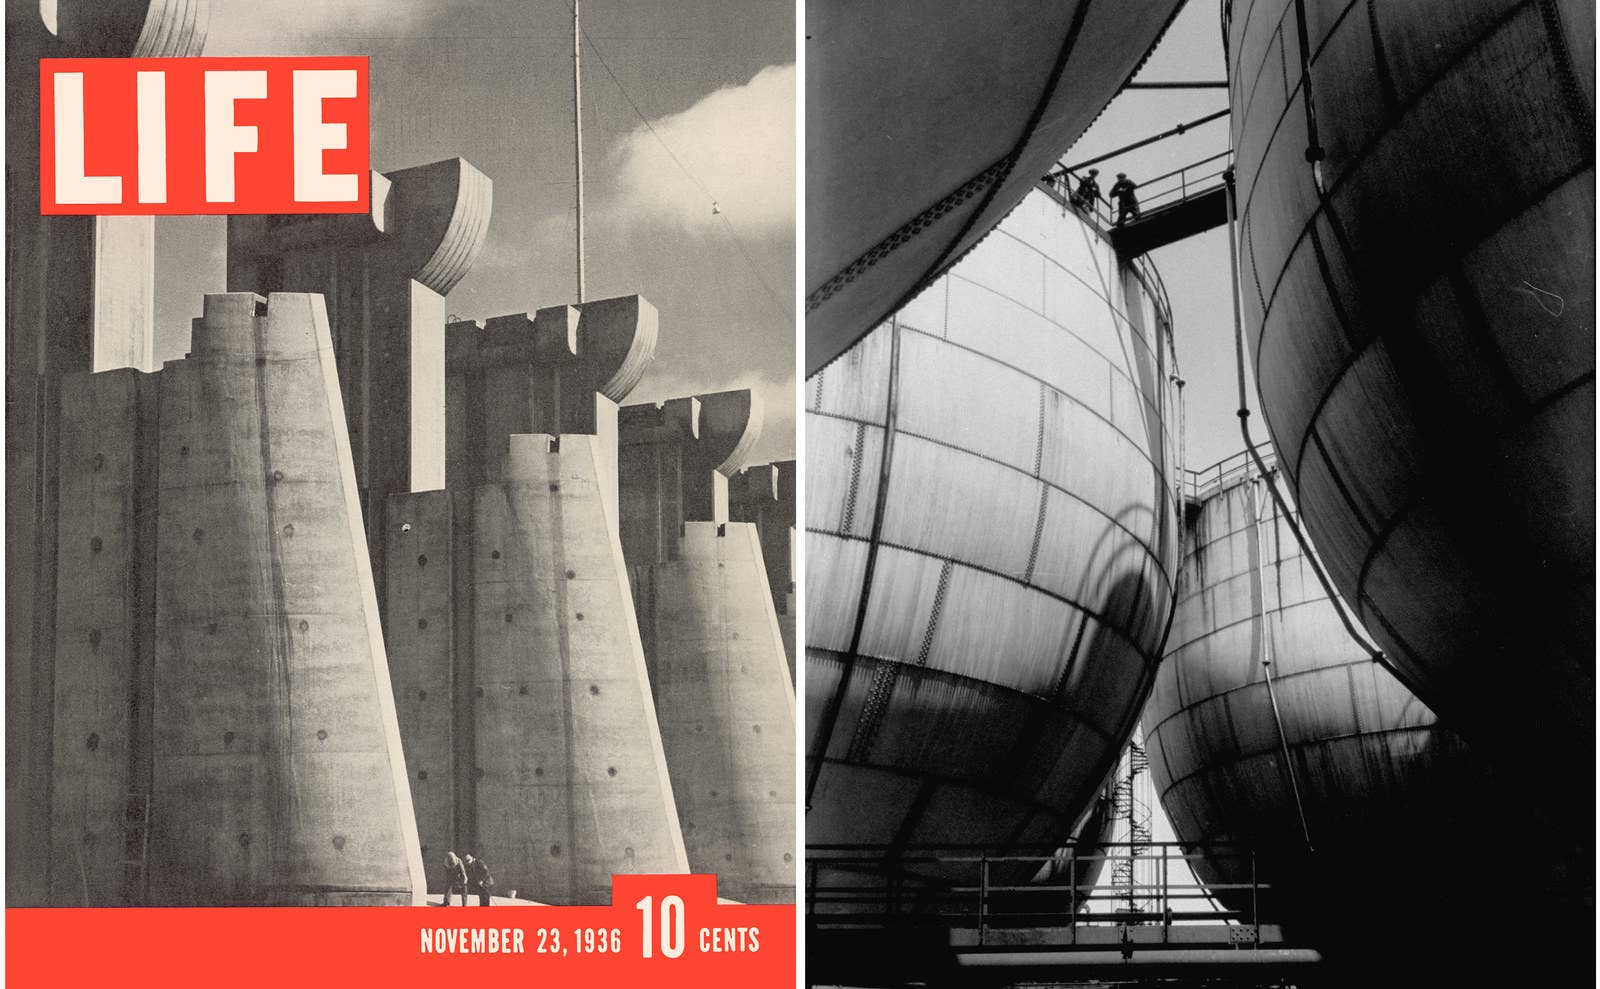 À esquerda: a primeira capa da revista Life traz uma fotografia da represa de Fort Peck, sobre o rio Missouri, em Montana, em 23 de novembro de 1936. À direita: tanques de armazenamento de amônia, em 1939.